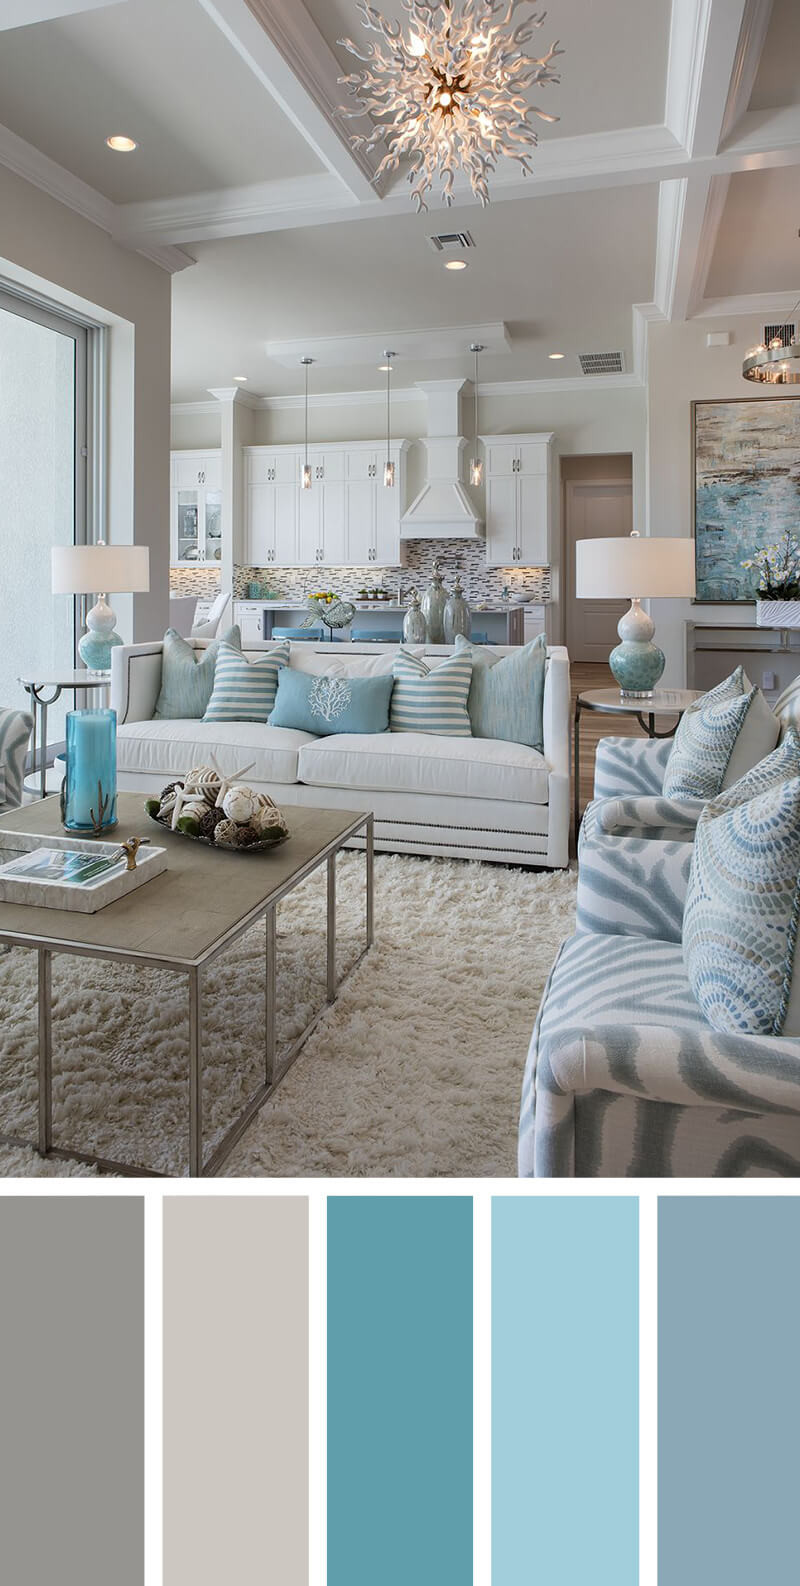 Best ideas about Best Living Room Paint Colors
. Save or Pin 21 Cozy Living Room Paint Colors Ideas for 2019 Now.